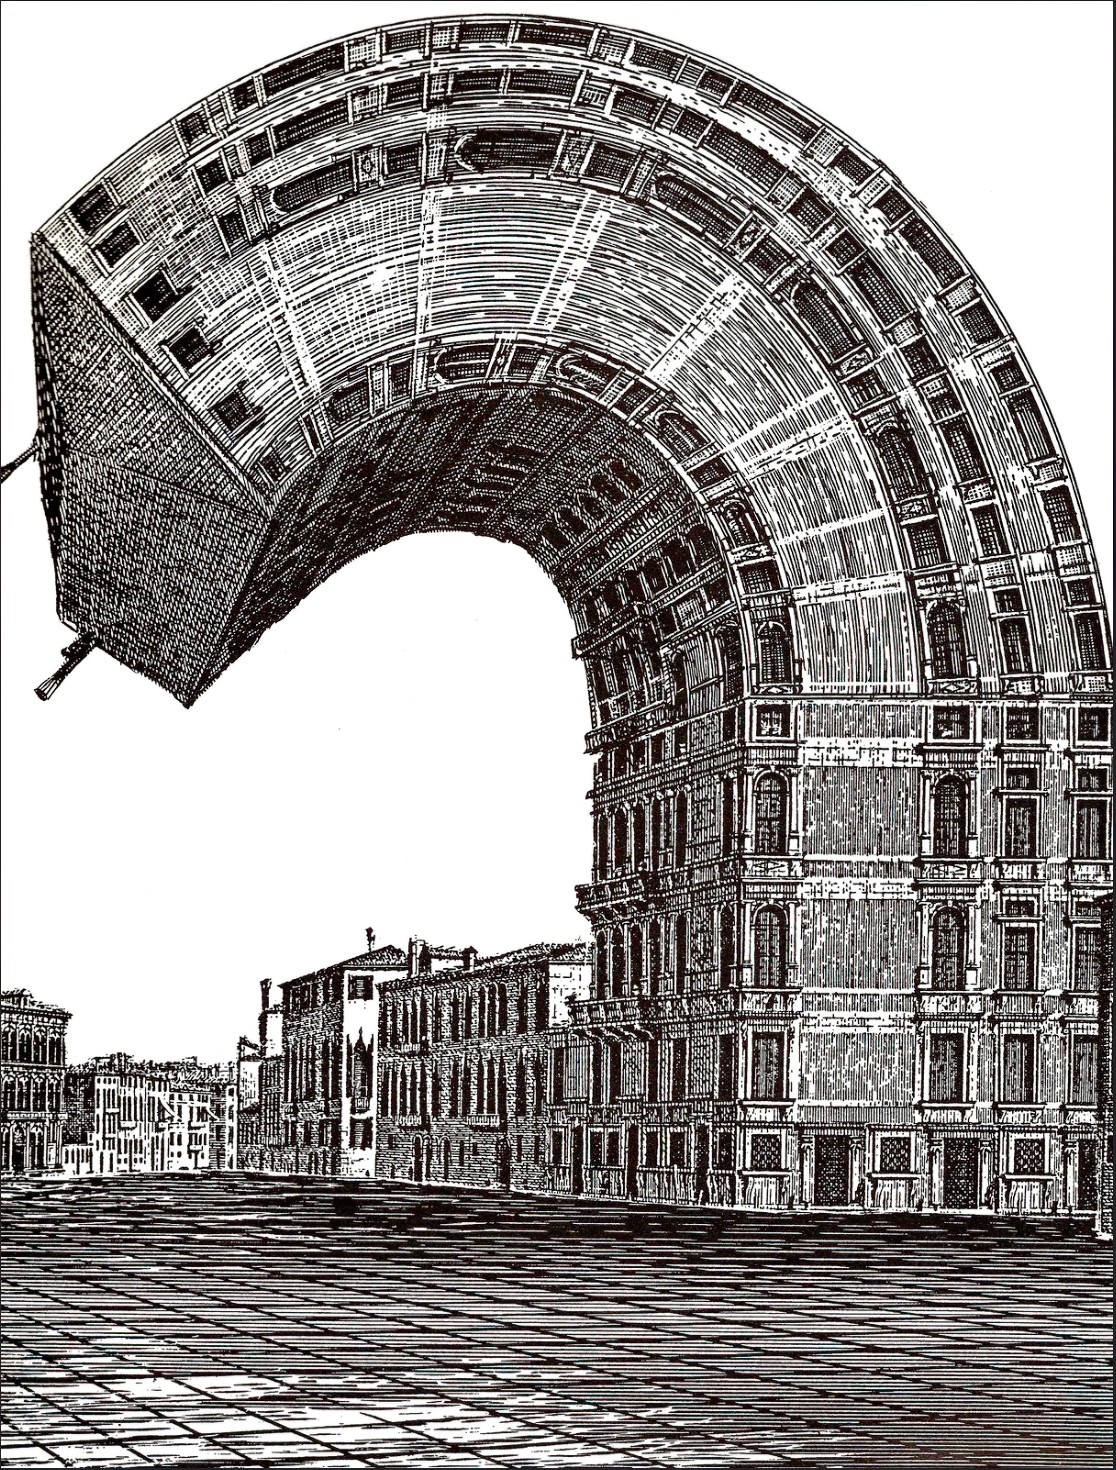 LES DESSOUS DE LA VILLE (1985) Francis Masse curved building